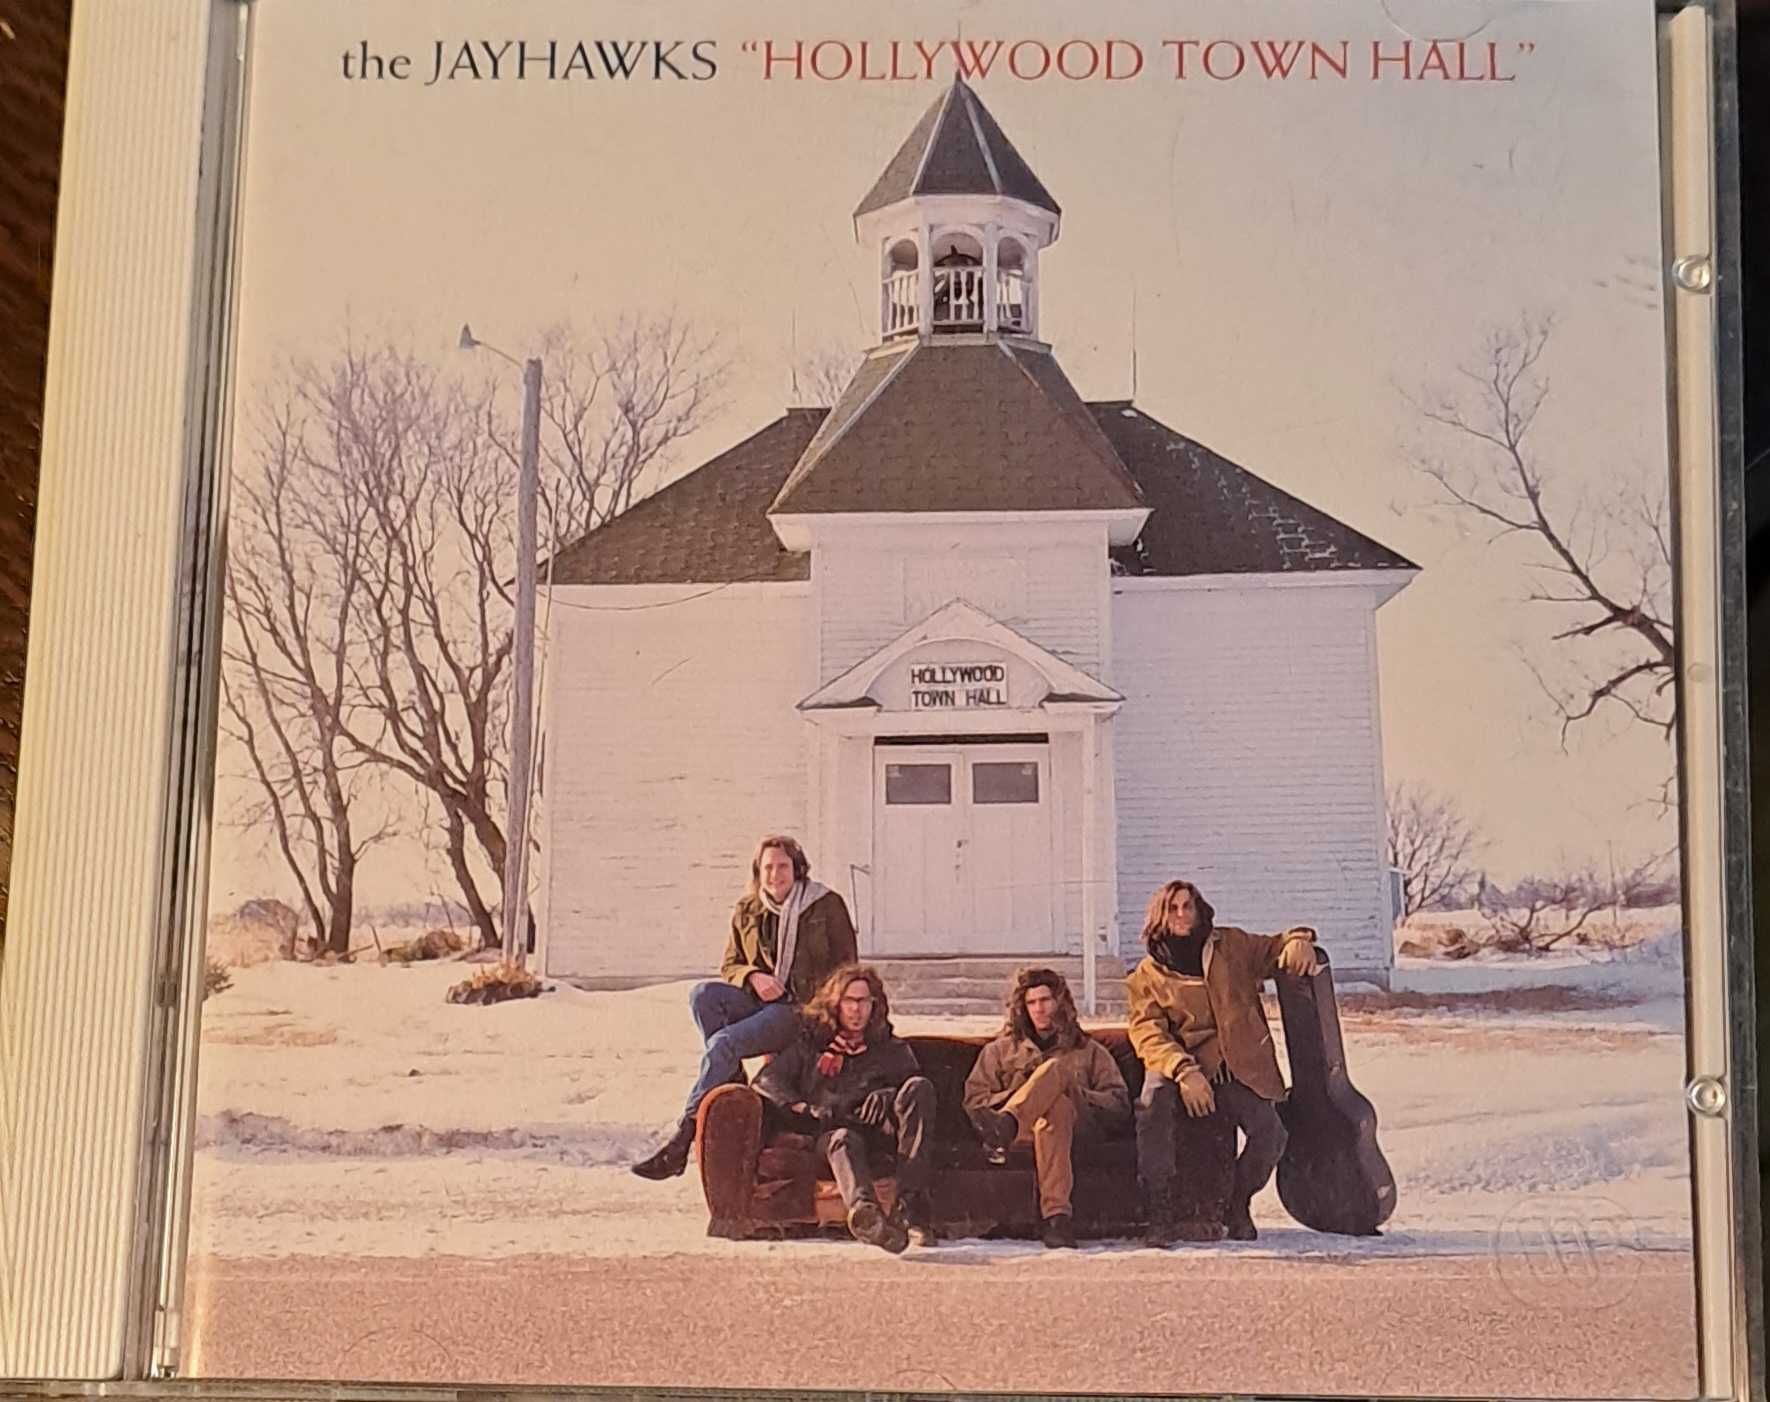 The Jayhawks - "Hollywood Town Hall"